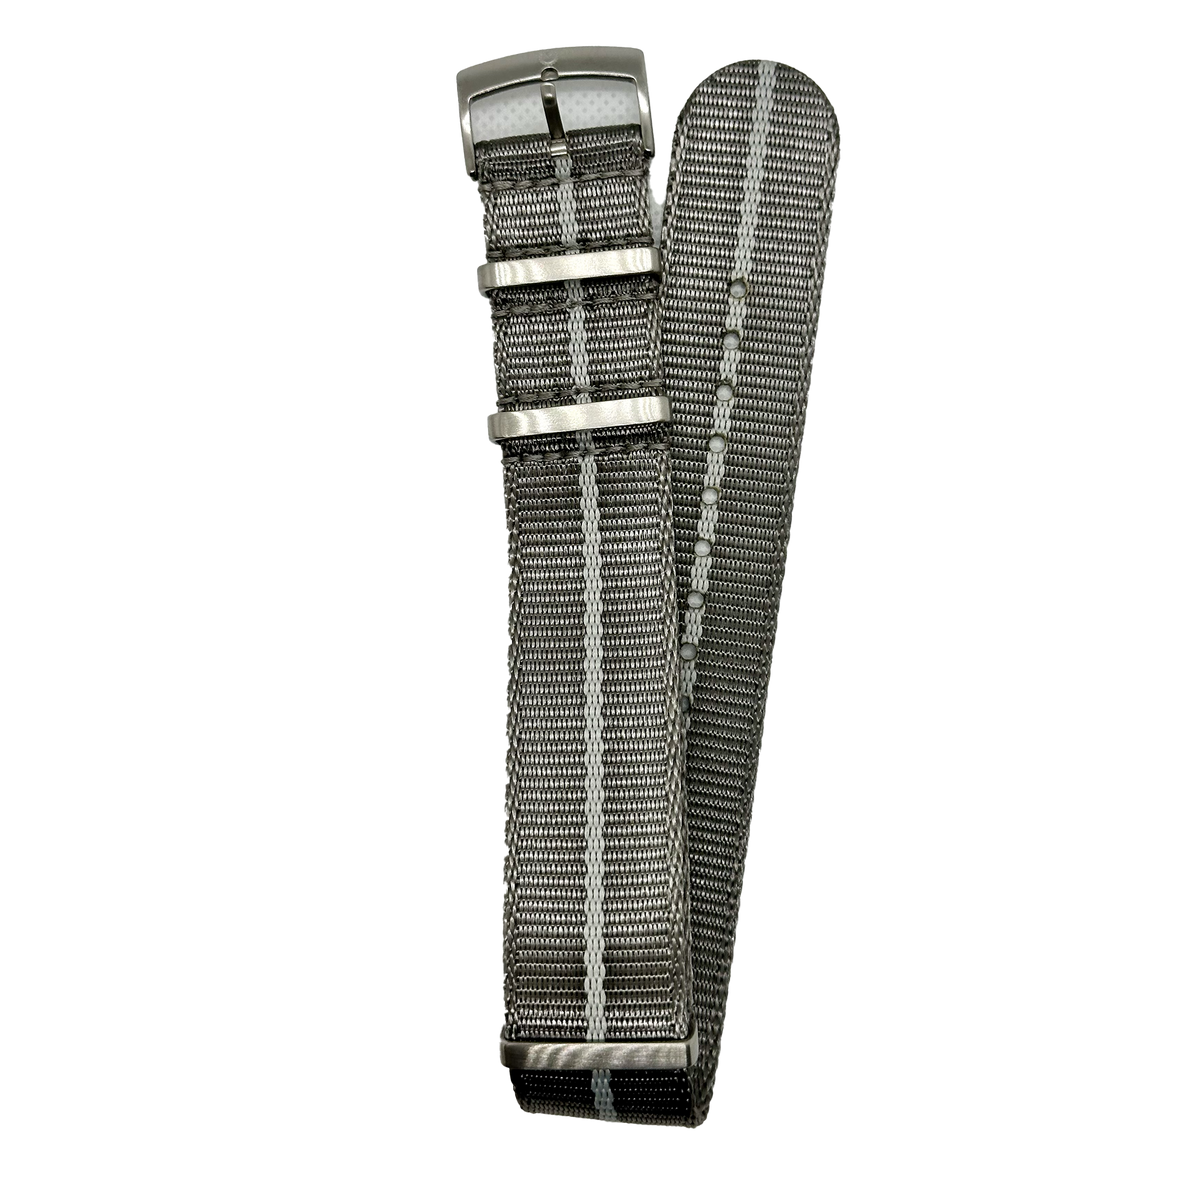 Halifax Watch Bands - Seat Belt Luxury NATO Strap 2.0